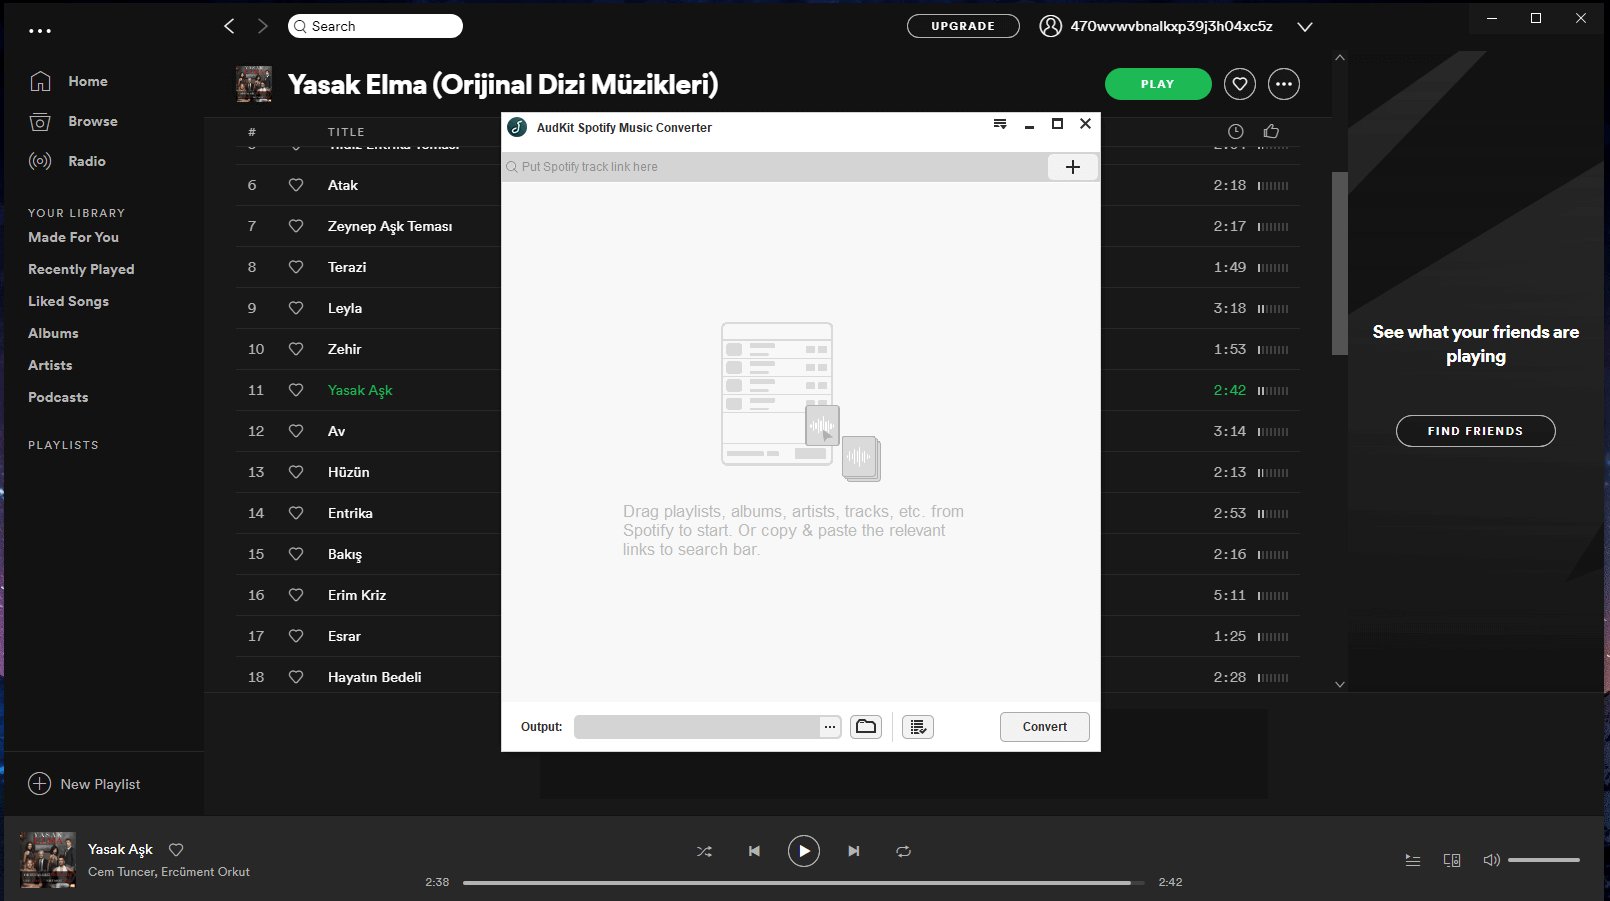 AudKit Spotify Music Converter - 2